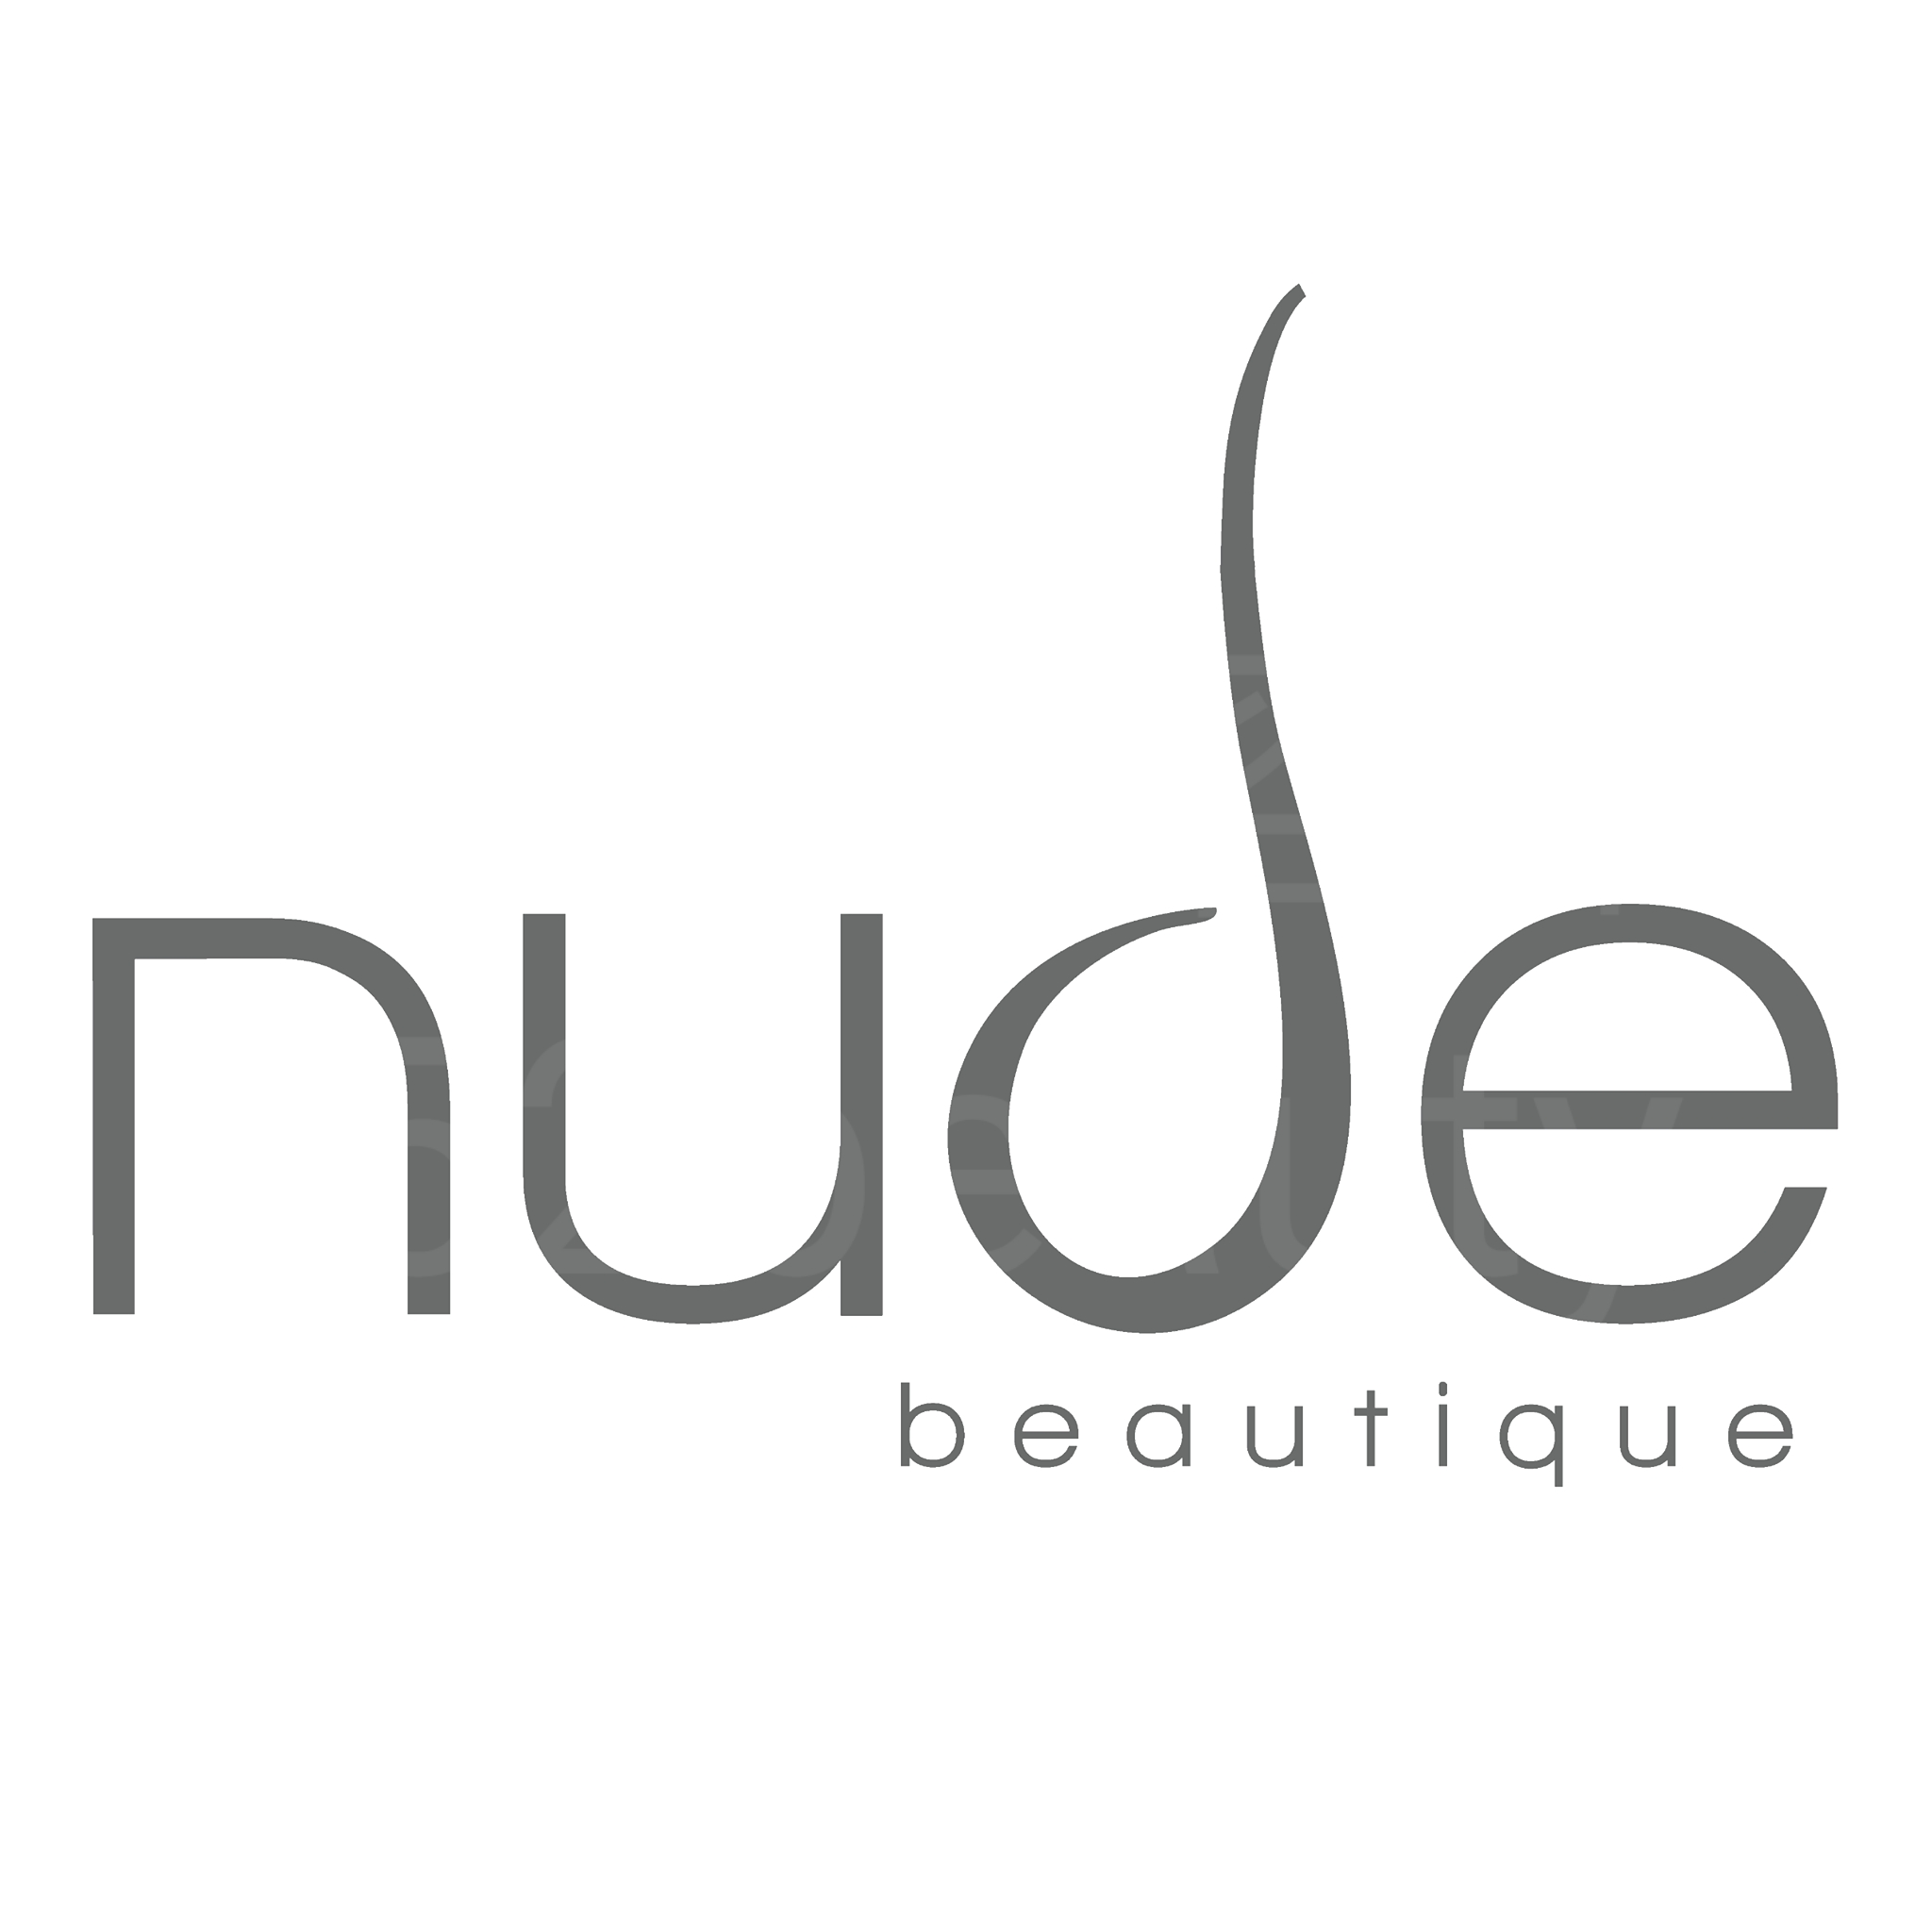 脱毛: nude beautique (蘭桂芳分店)